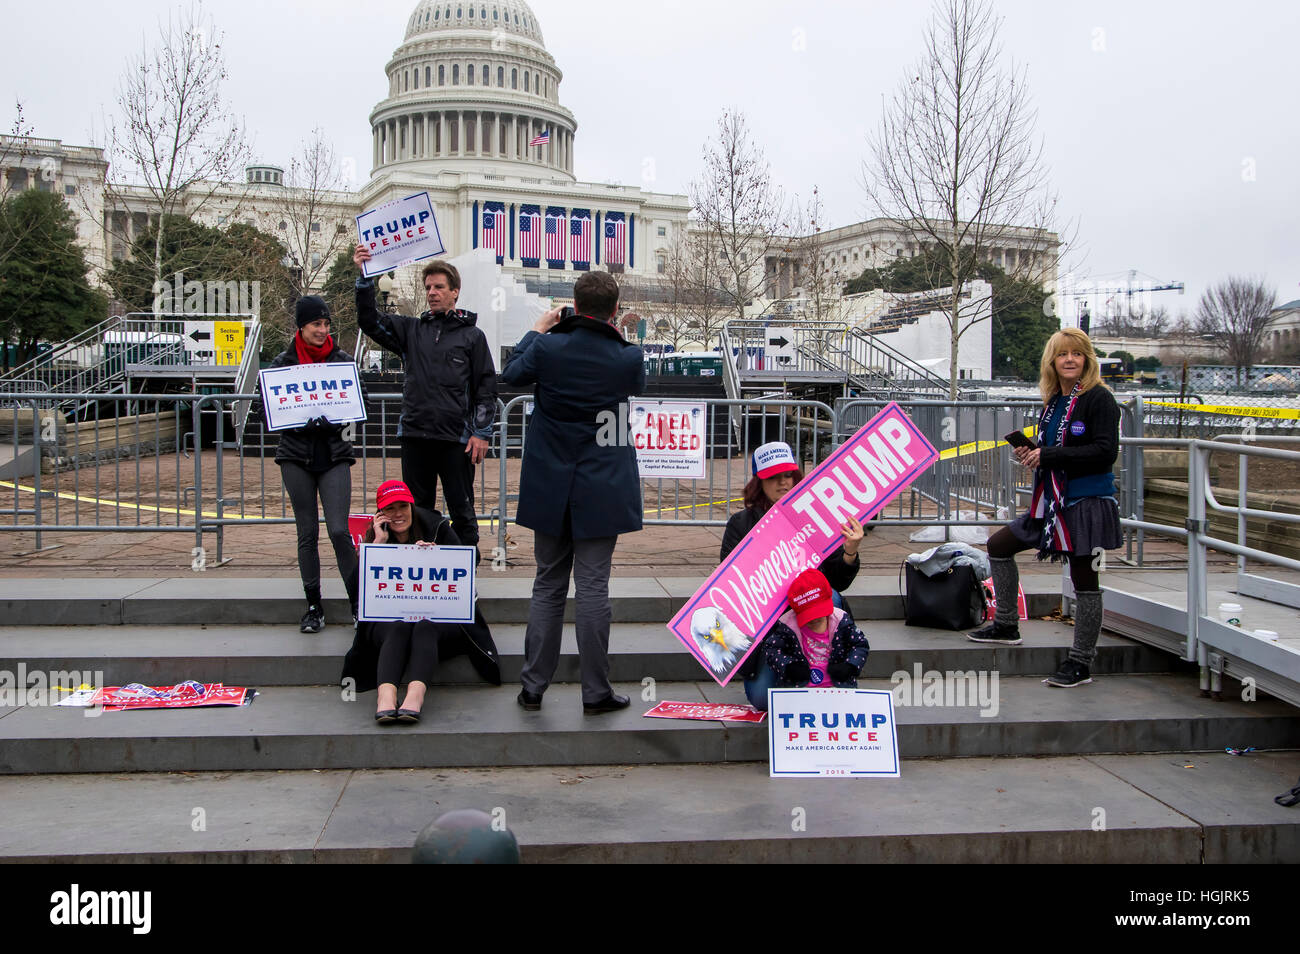 Washington, DC, USA. 21 Jan, 2017. Marche des femmes à Washington, D.C. Crédit : Darryl Smith/Alamy Live News Banque D'Images